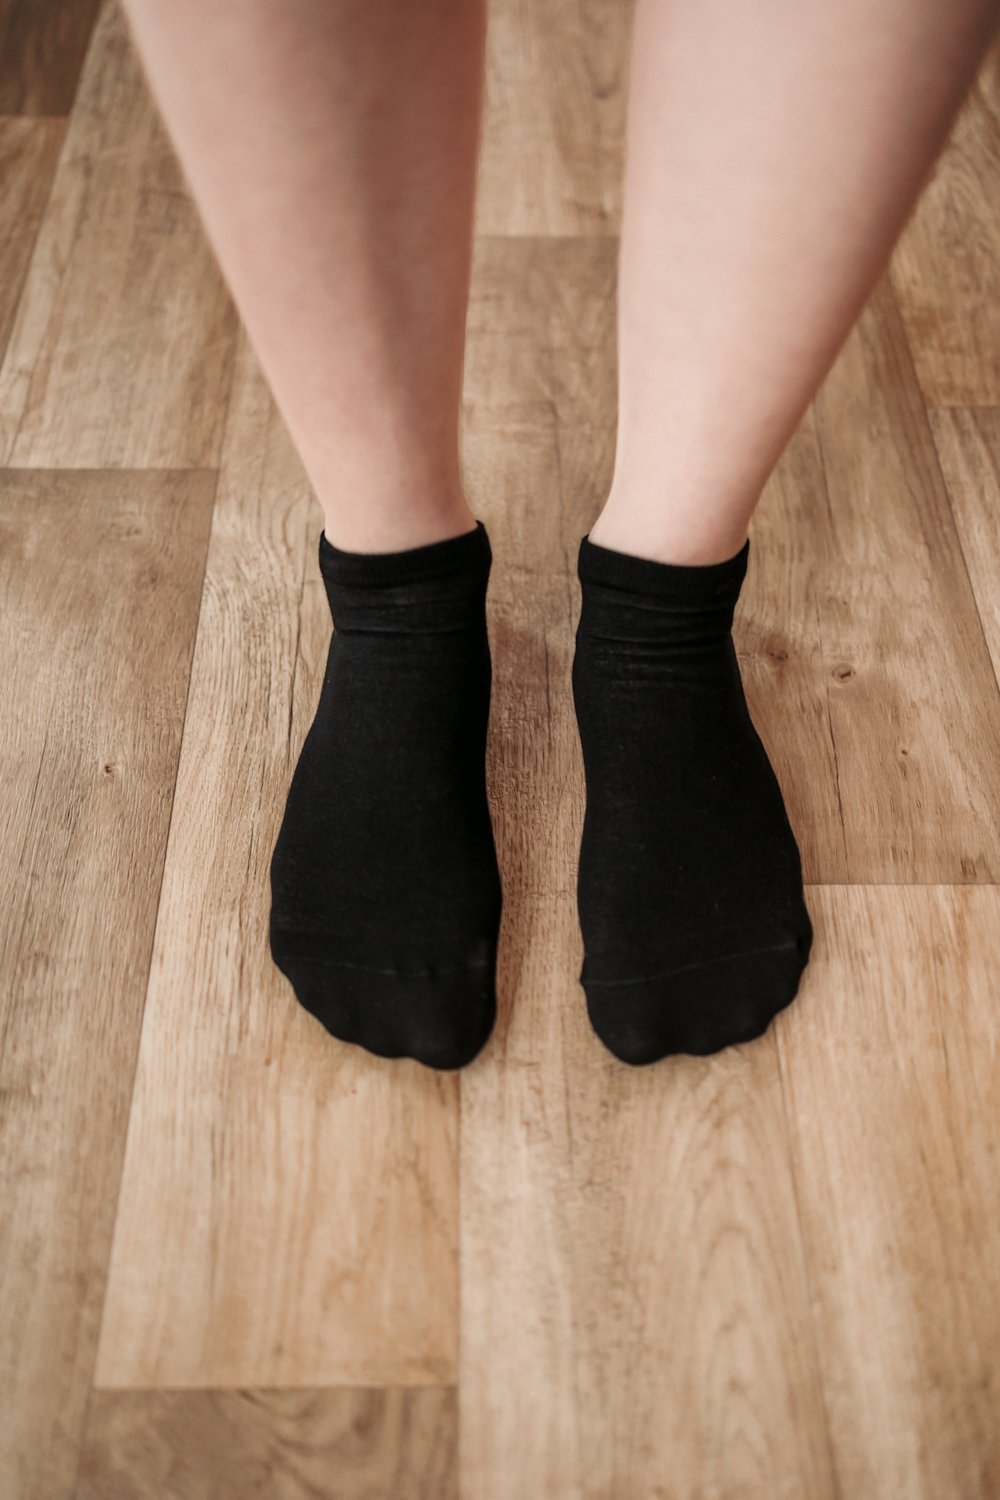 Be Lenka barefootové ponožky nízké černé Velikosti ponožek, rukavic: 39-42